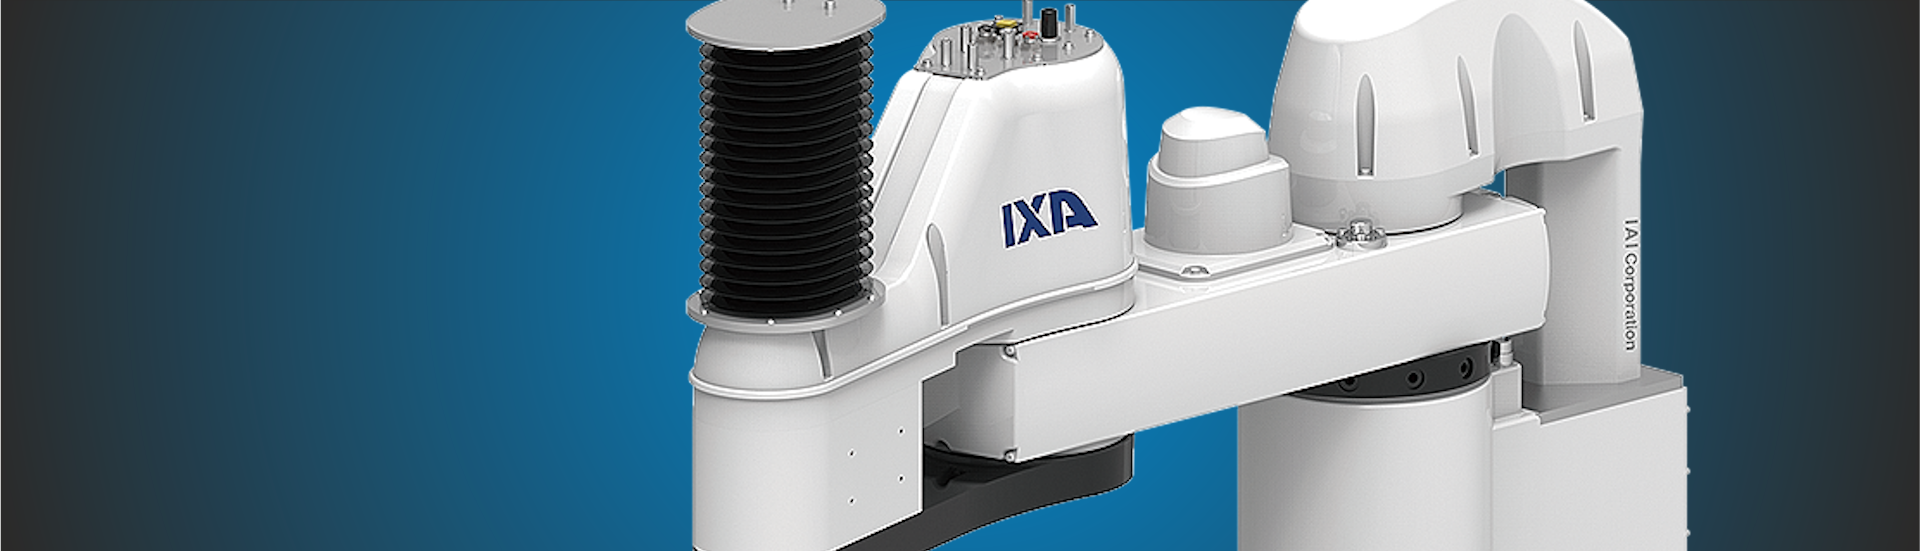 Topfoto med næroptagelse af IXA SCARA robot